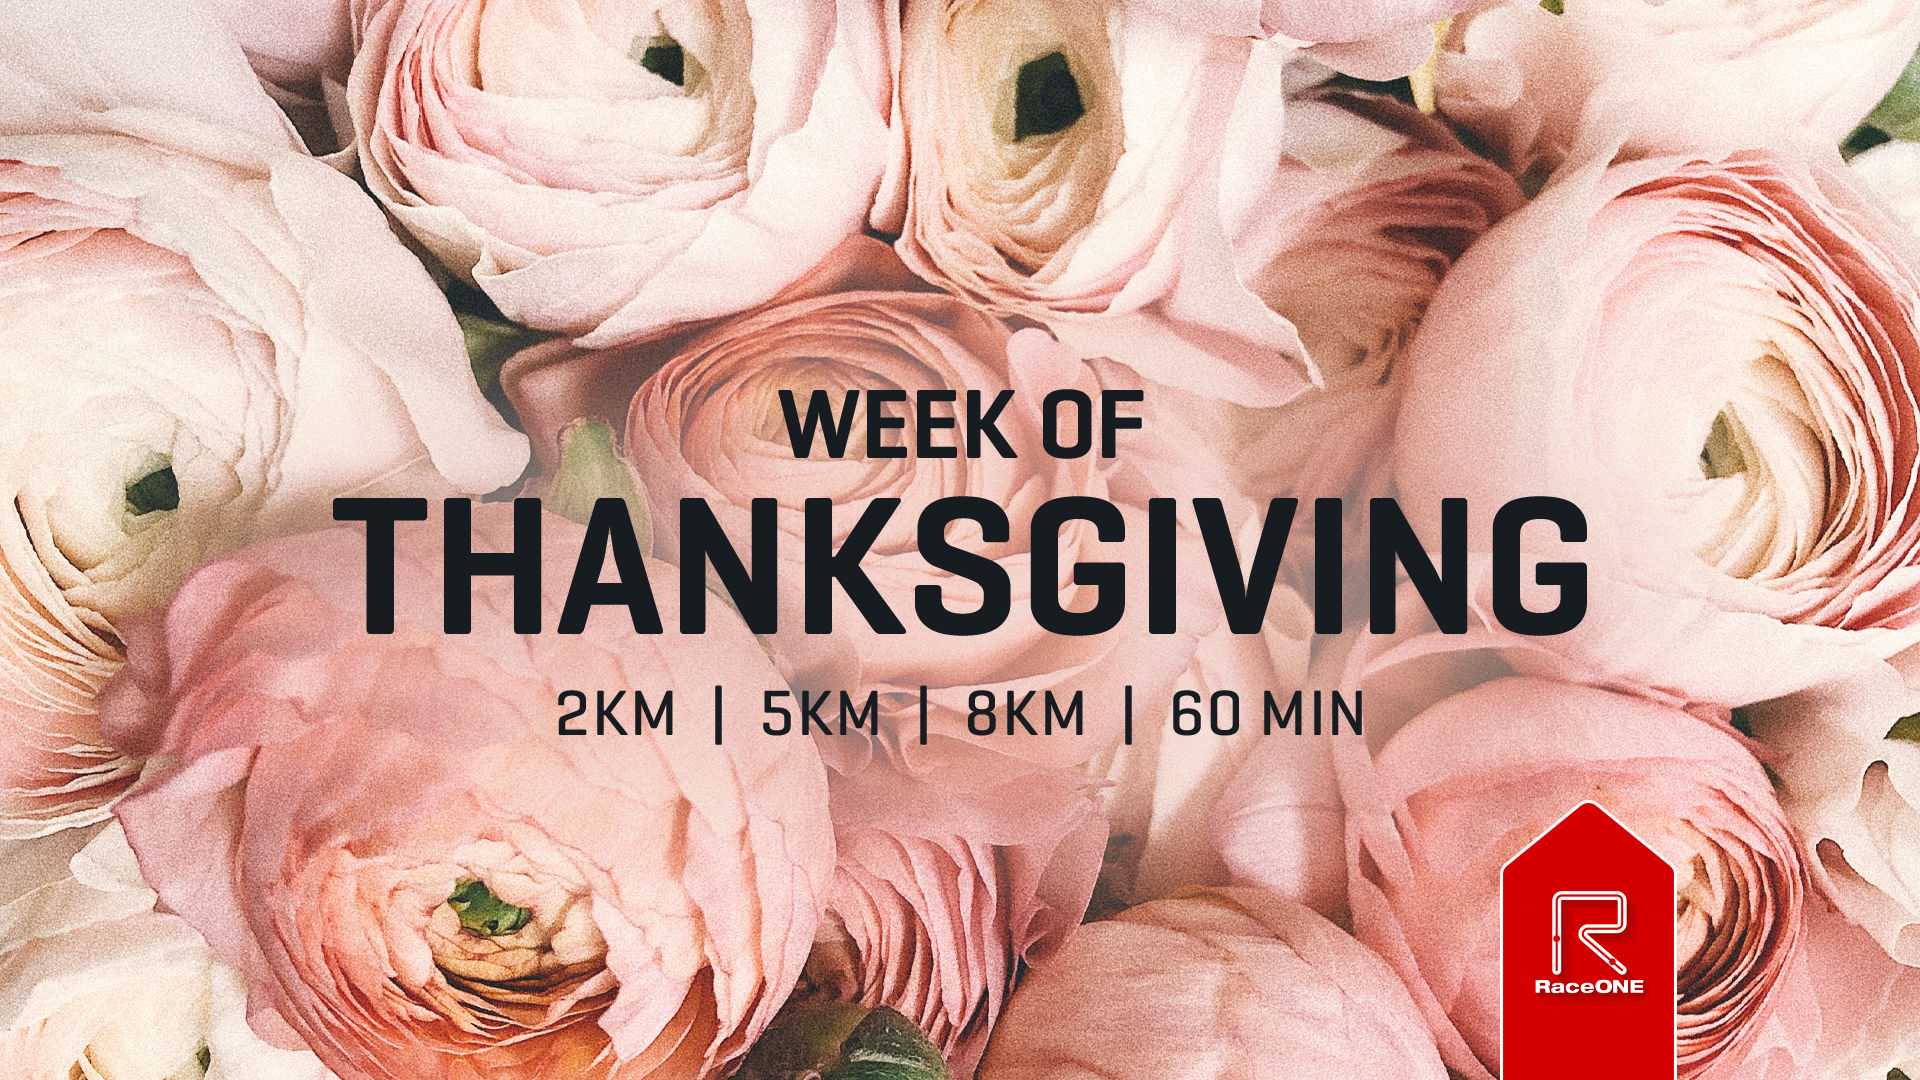 Week of Thanksgiving - 8km